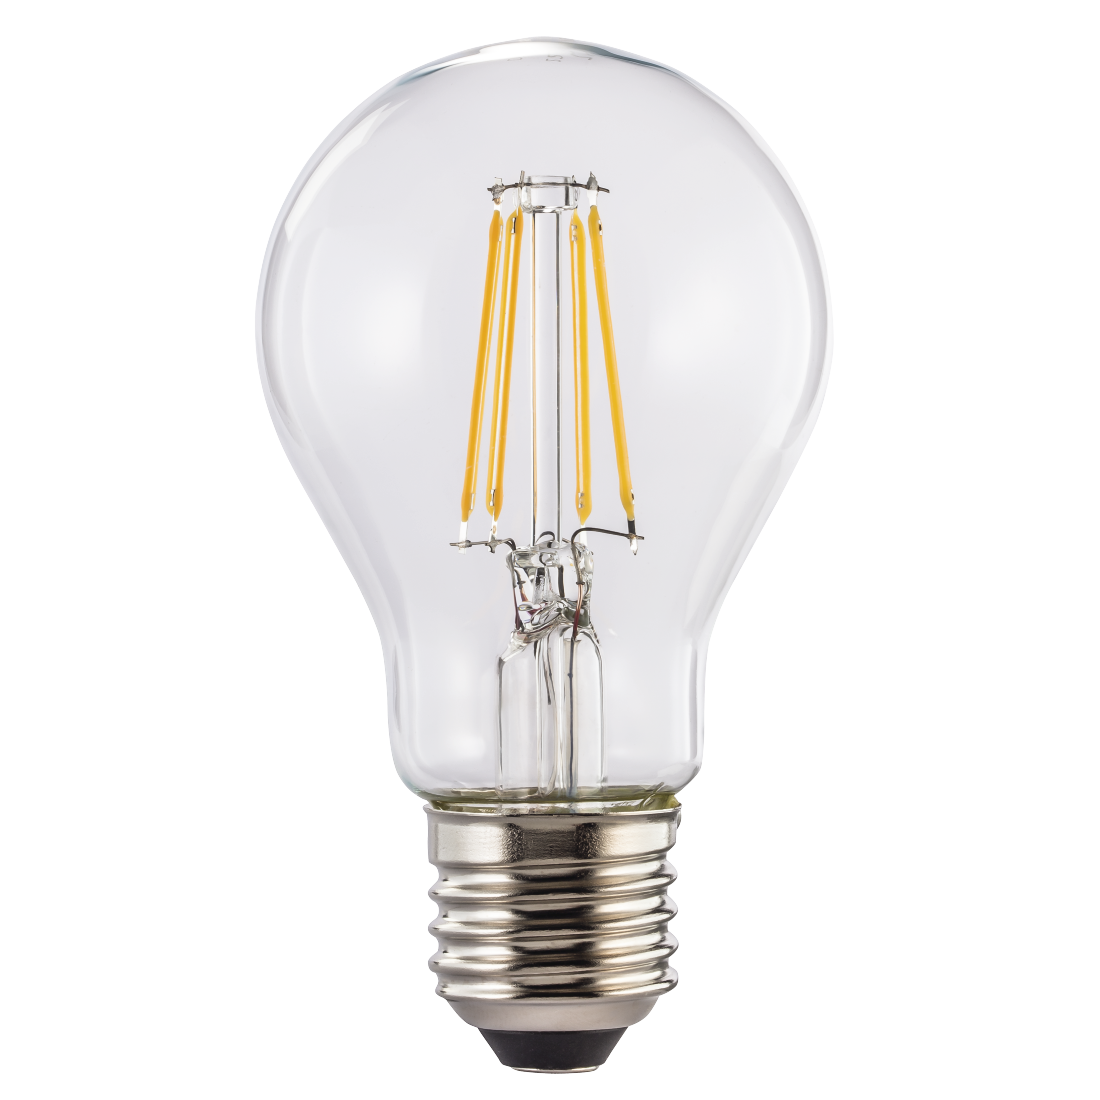 abx High-Res Image - Xavax, Ampoule filament LED, E27, 1055lm rempl. ampoule incand., 75W, blc chd